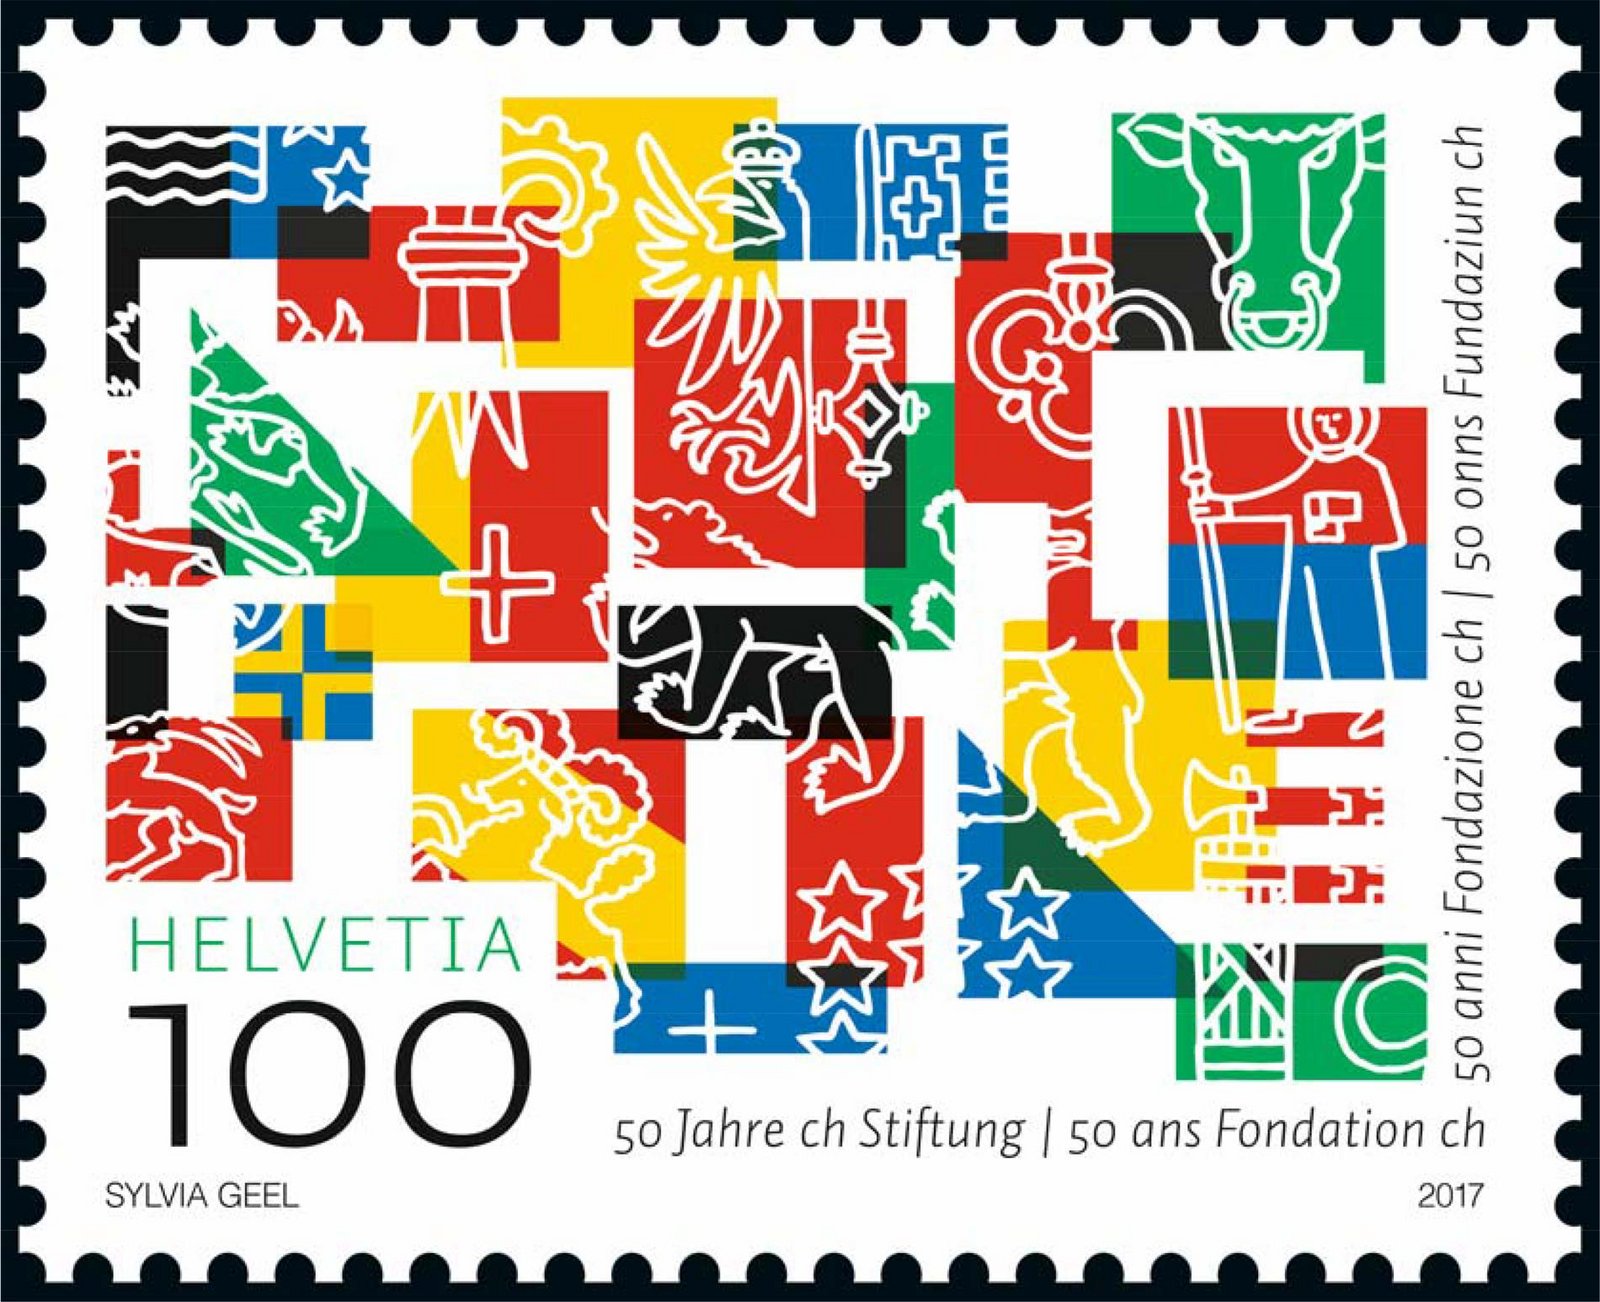 Auf dieser vielfarbigen Briefmarke sind die Farben und Symbole der Wappen der 26 Schweizer Kantone neu geordnet und vermischt worden.